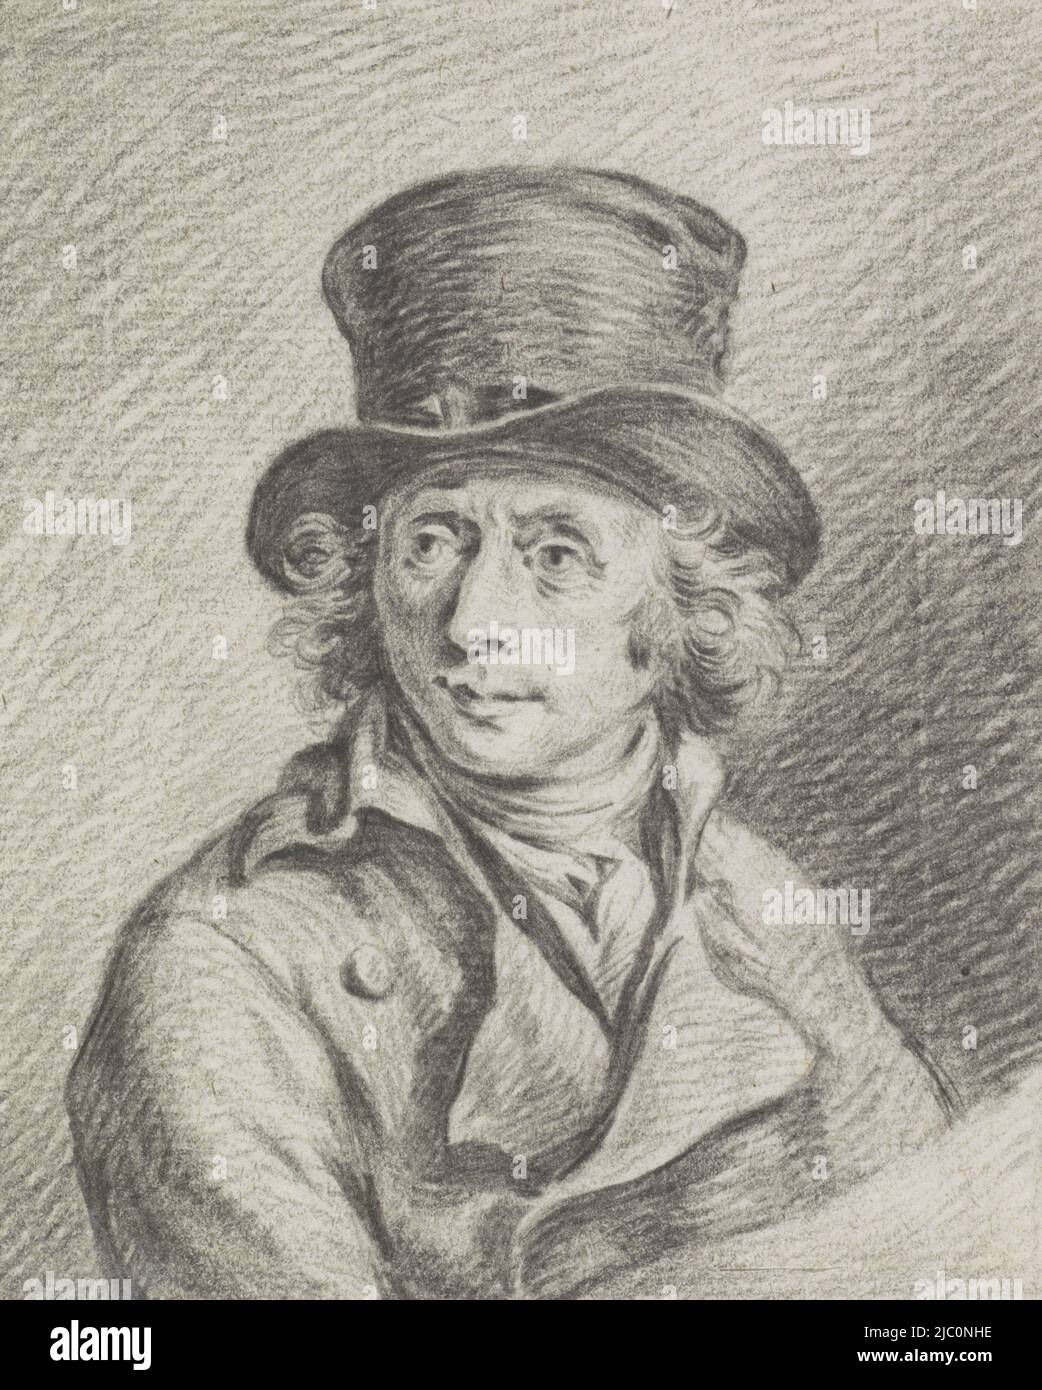 Portrait d'Adriaan de Lelie, dessinateur: Jean Bernard, 1775 - 1833, papier, h 122 mm × l 98 mm Banque D'Images